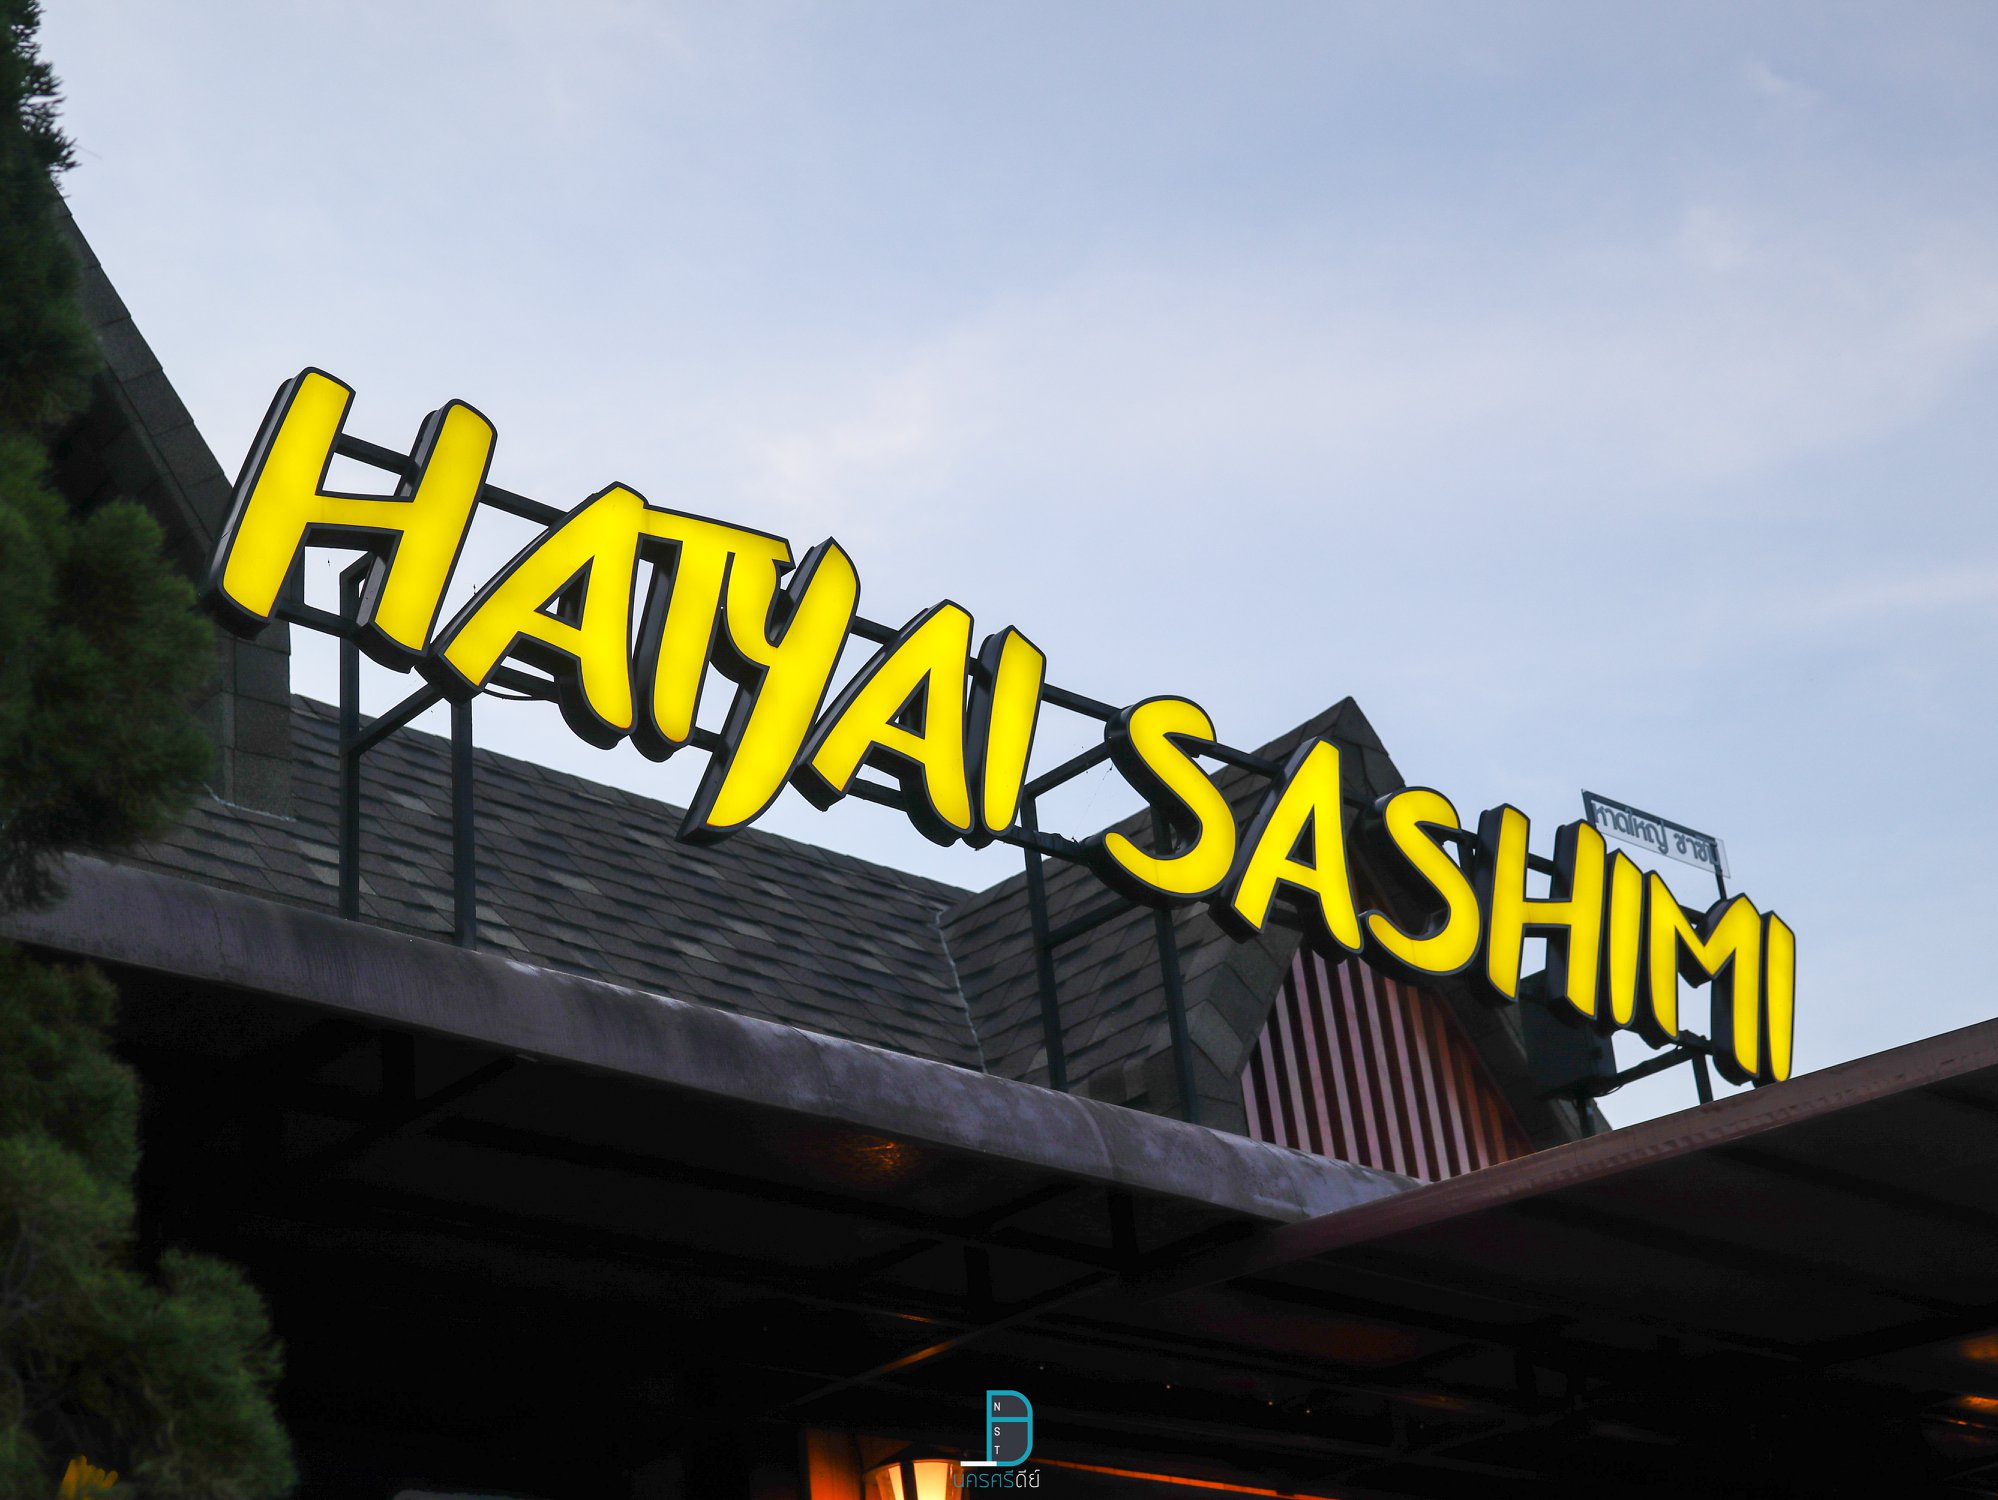   hatyaisasimi,ของกิน,หาดใหญ่ซาซิมิ,ร้านอาหารญี่ปุ่น,อร่อย,จุดเช็คอิน